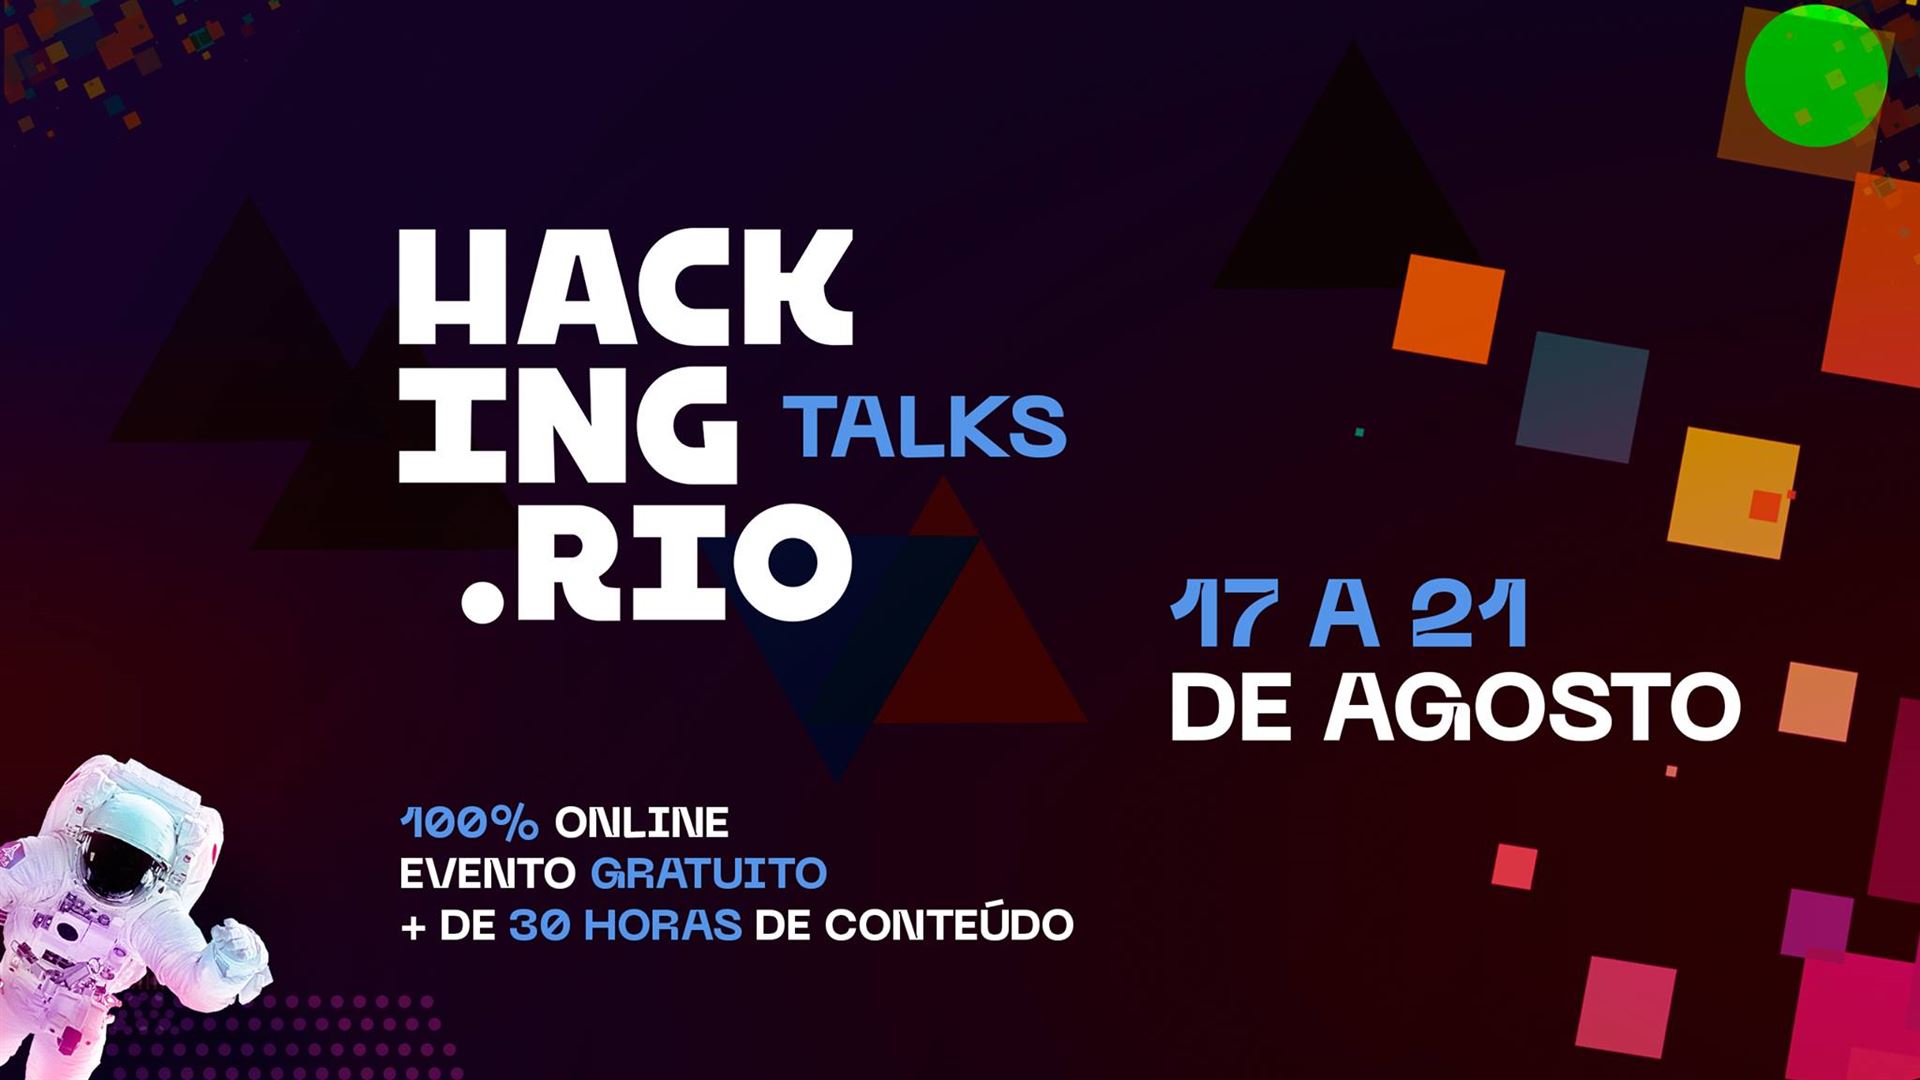  Hacking.Rio Talks reúne mais de 130 líderes globais em maior hackathon online da América Latina